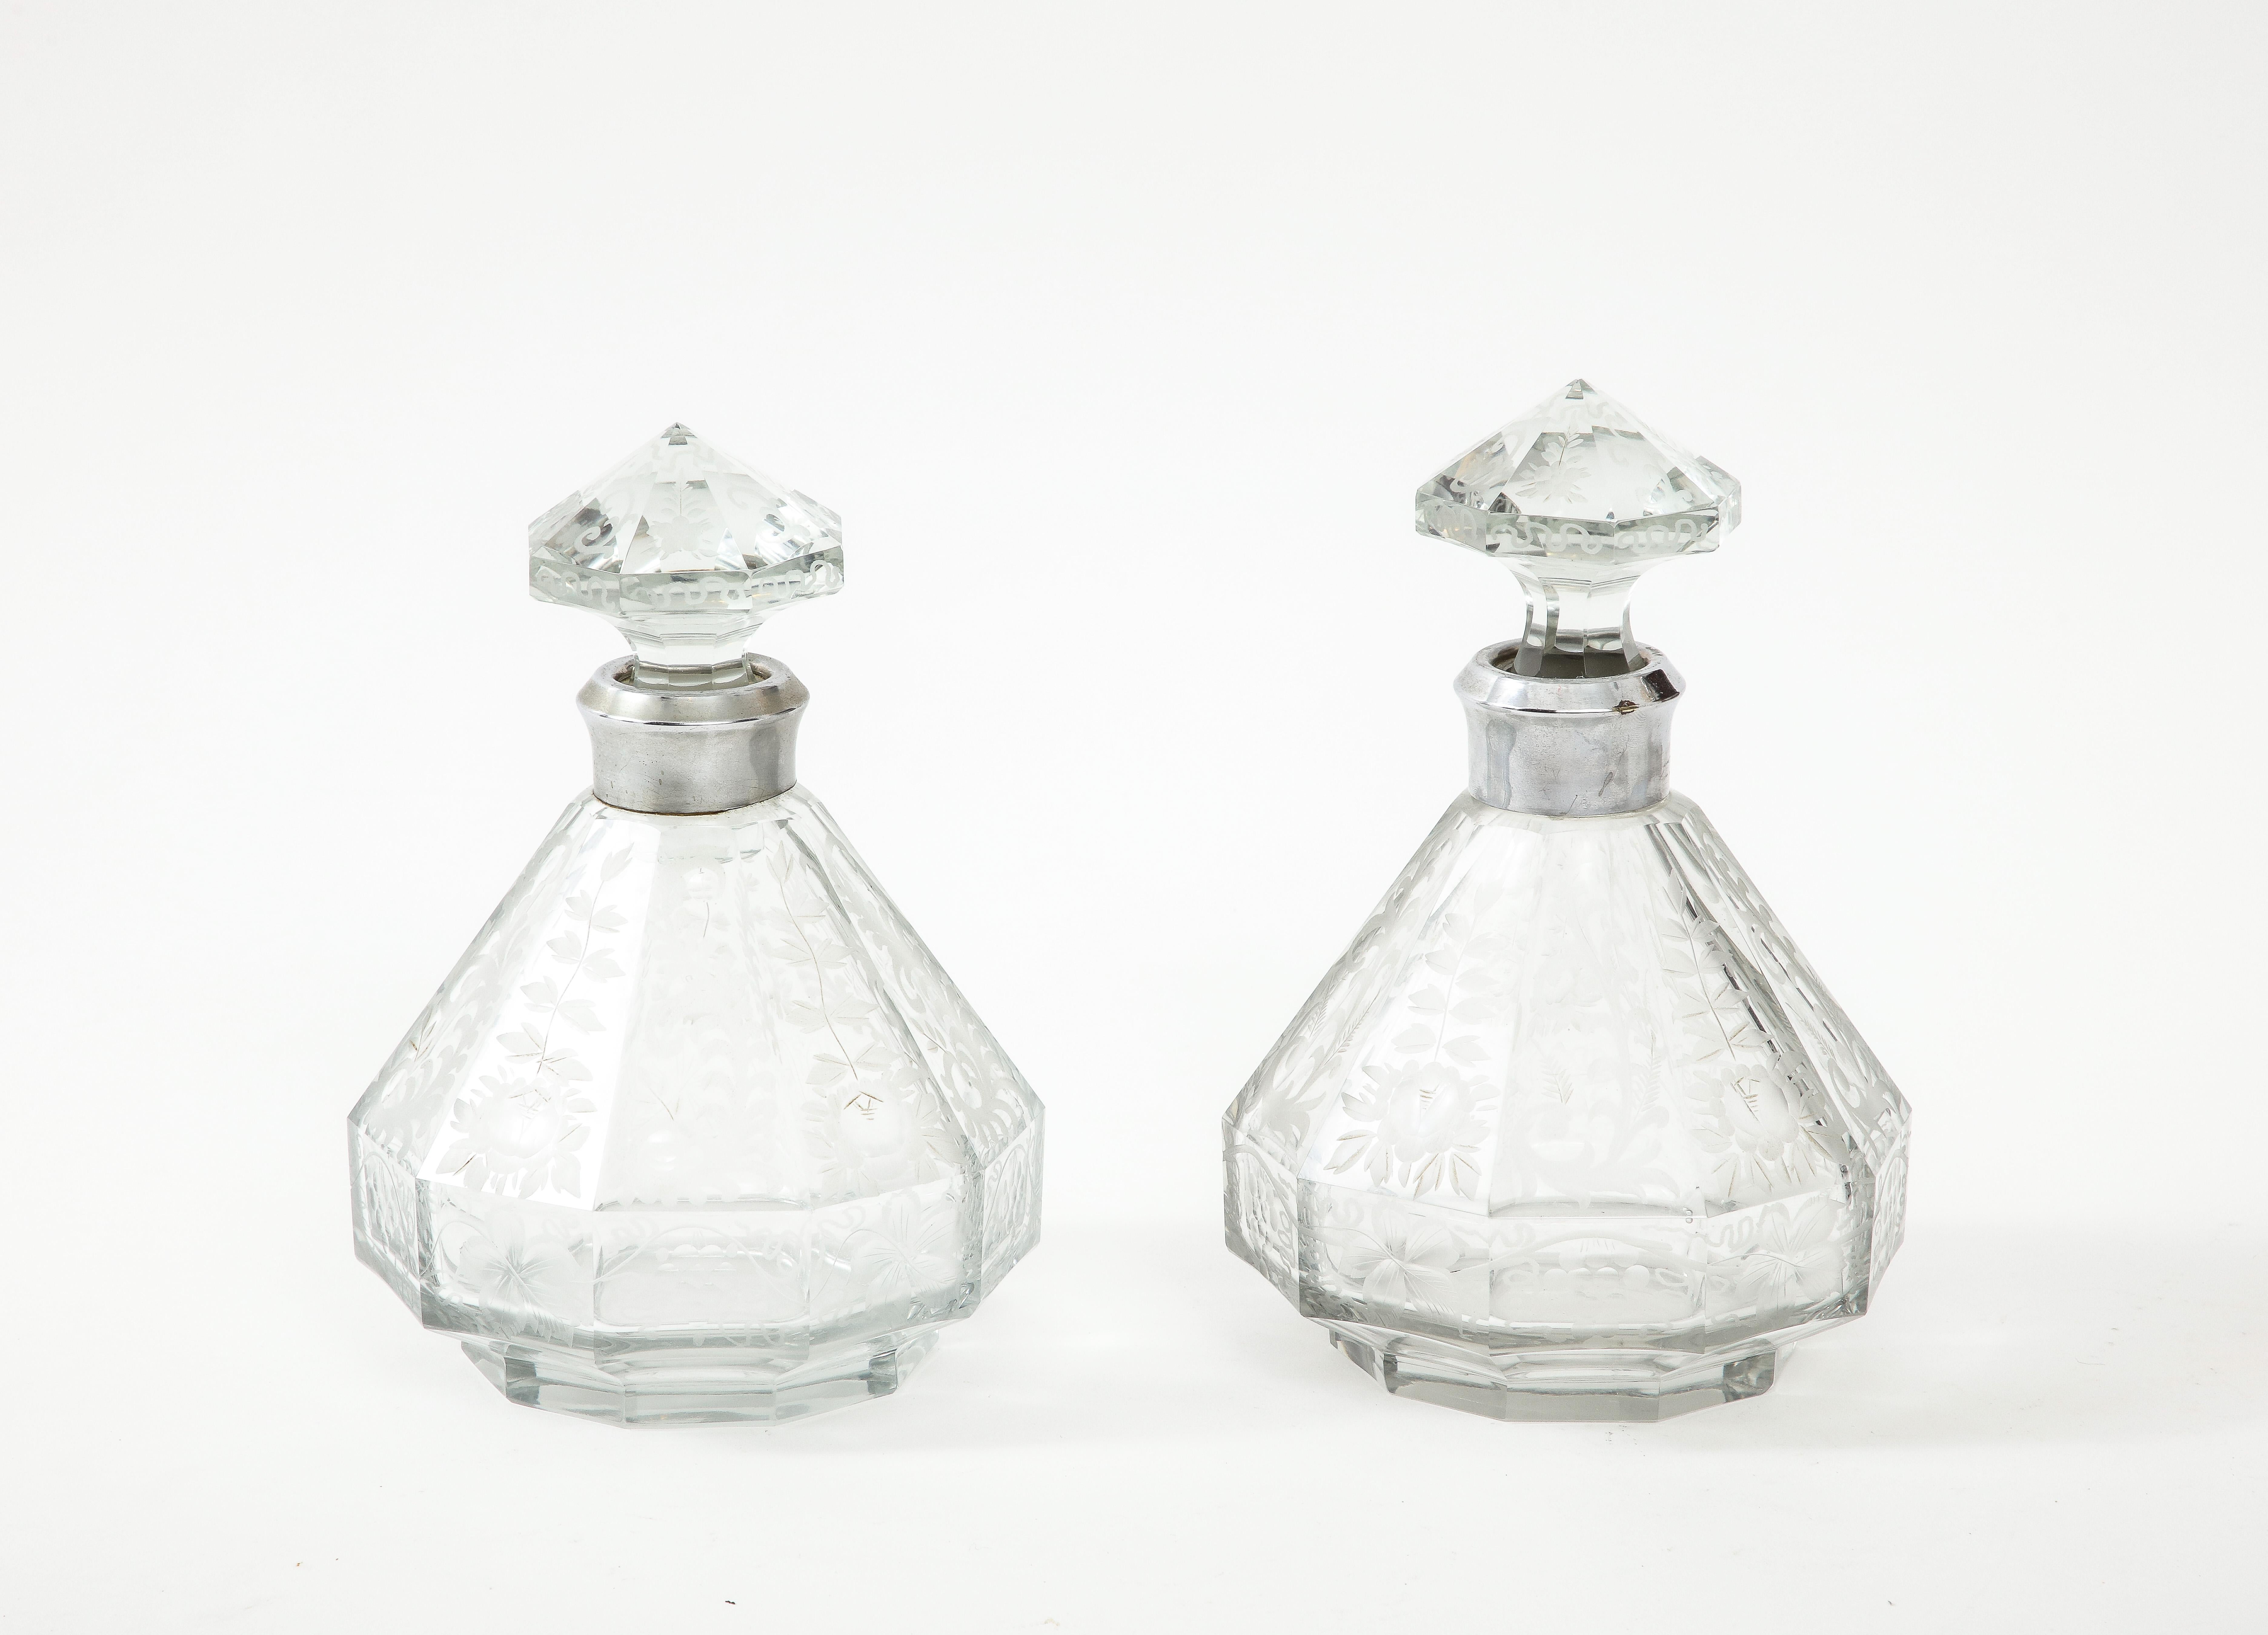 Geätzte Glaskaraffen mit Stopfen aus den 1940er Jahren, in alters- und gebrauchsbedingtem Originalzustand mit leichten Gebrauchsspuren und Patina.